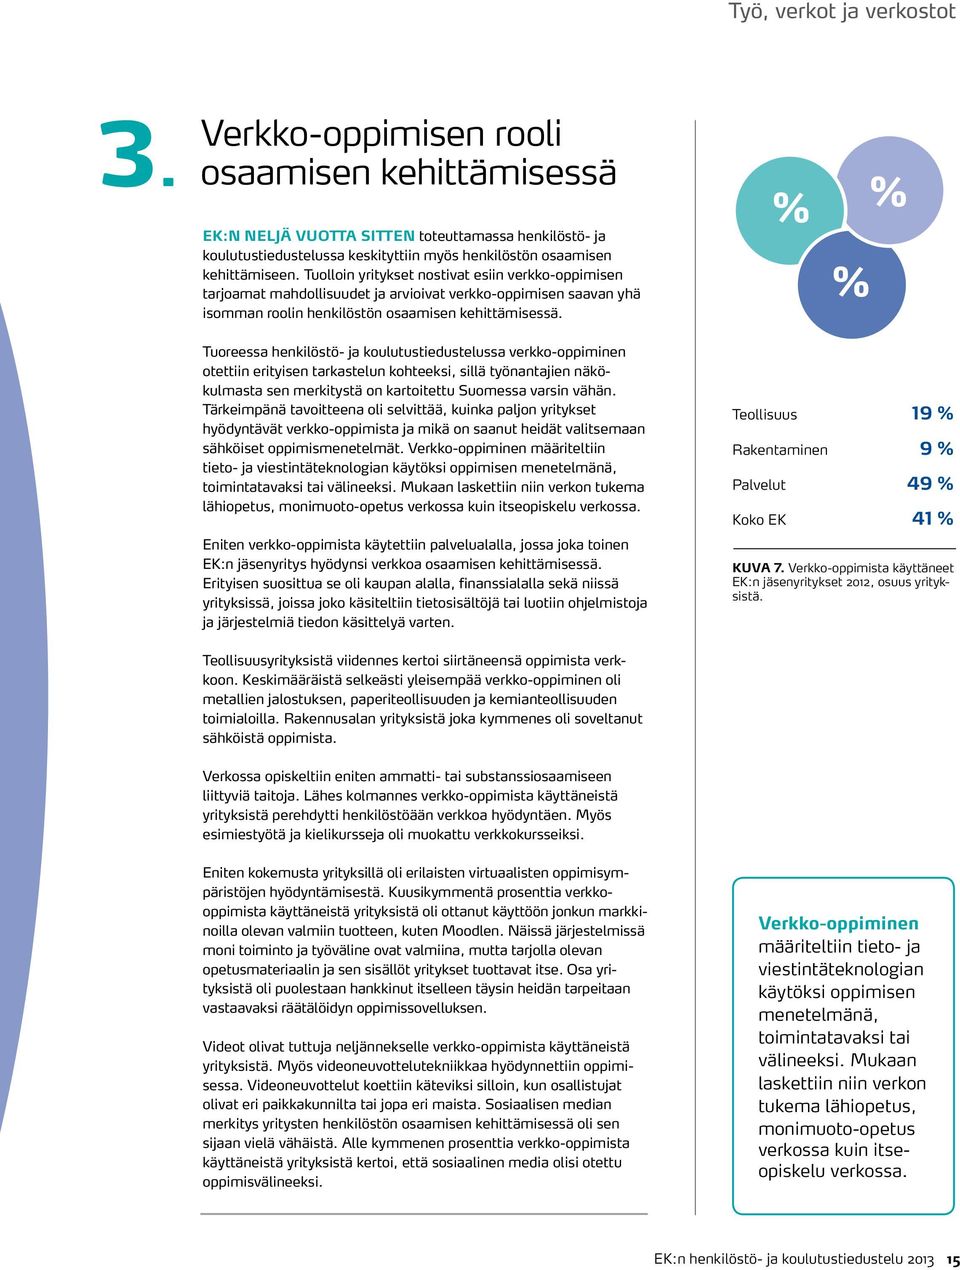 Tuoreessa henkilöstö- ja koulutustiedustelussa verkko-oppiminen otettiin erityisen tarkastelun kohteeksi, sillä työnantajien näkökulmasta sen merkitystä on kartoitettu Suomessa varsin vähän.